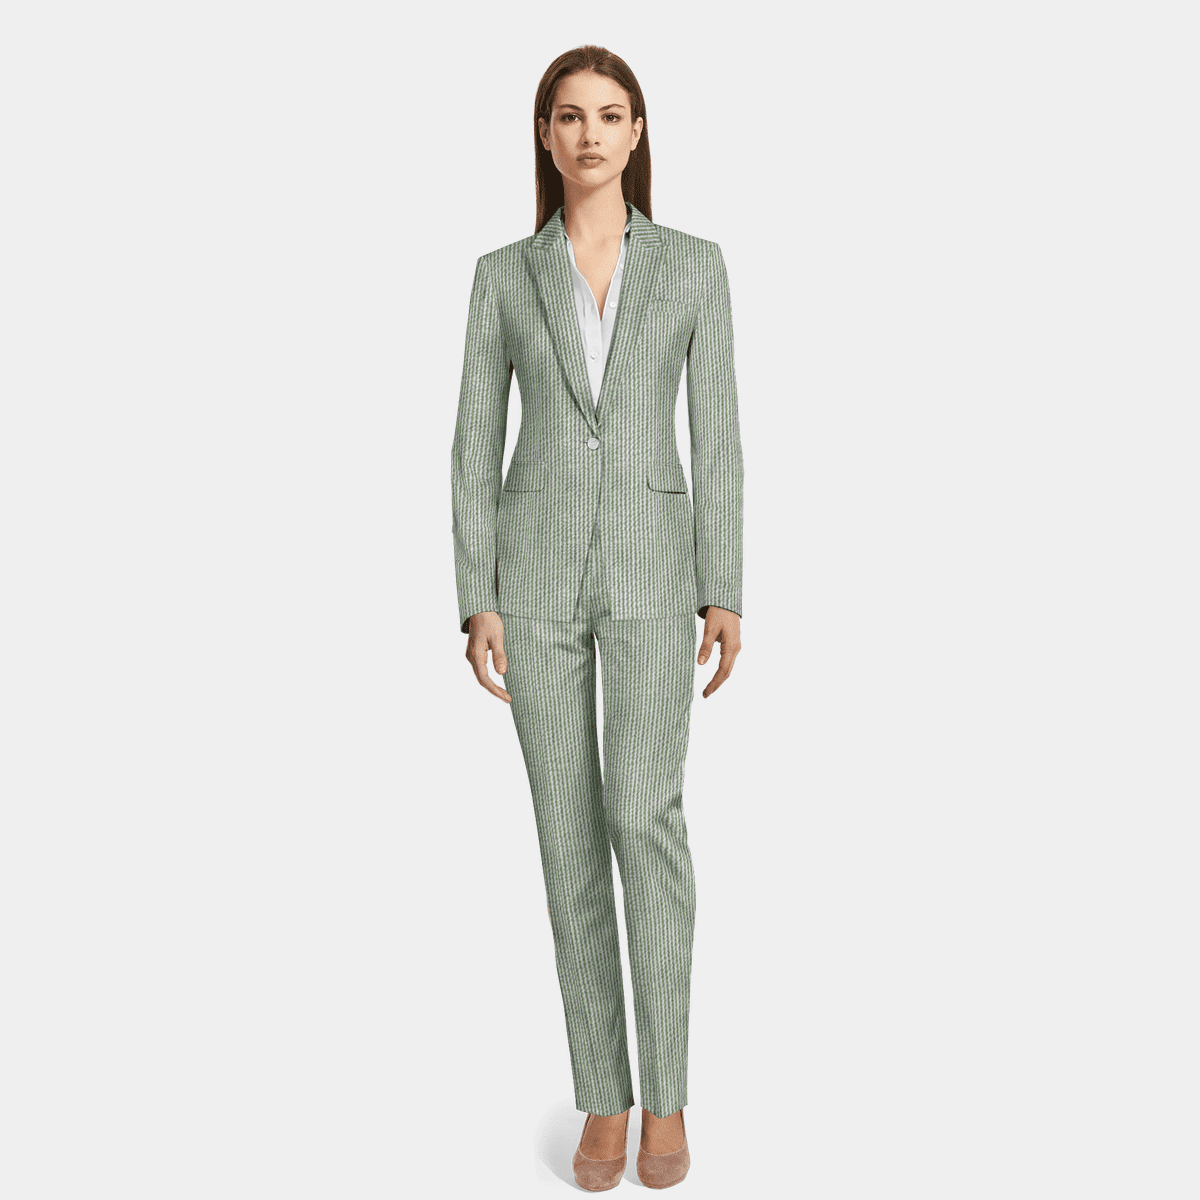 Light Green seersucker Pant Suit | Sumissura